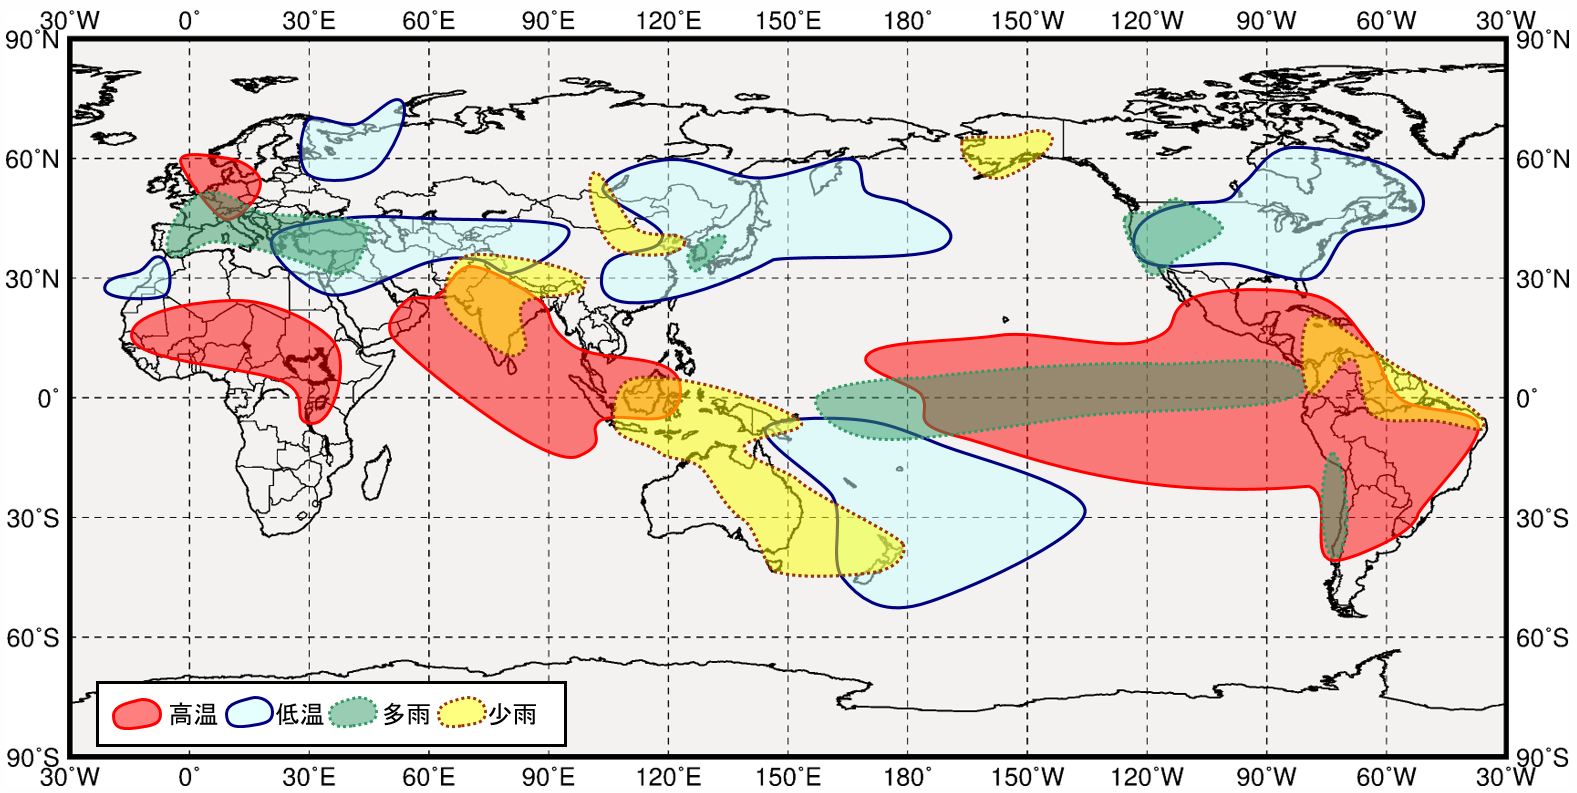 エルニーニョ現象に伴う世界の６月から８月にかけての気温と降水量の傾向の分布図